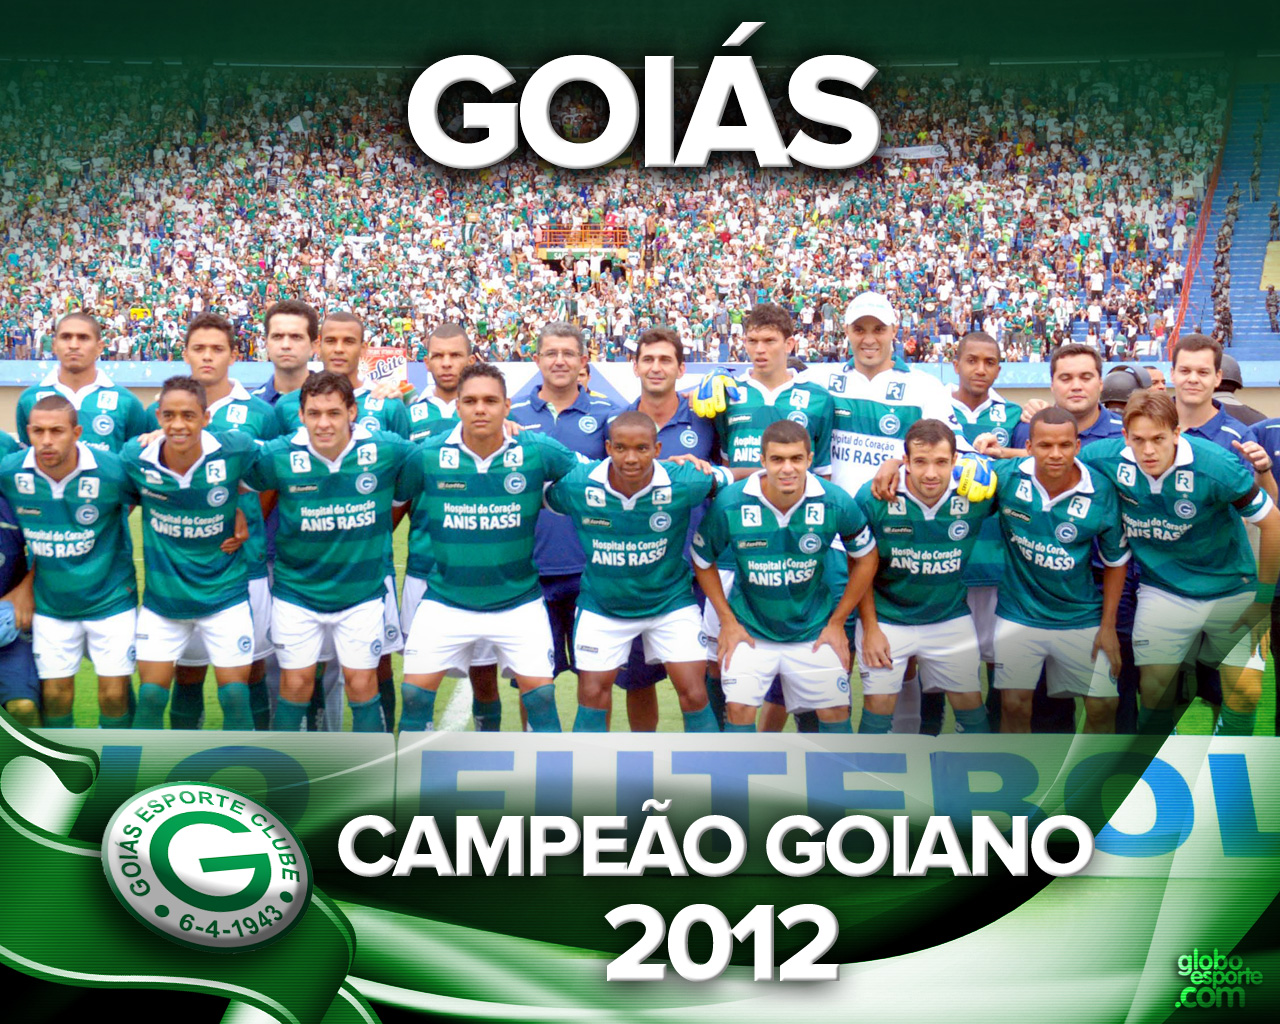 Parabéns Goiás Esporte Clube | Kestão de Opinião!?!